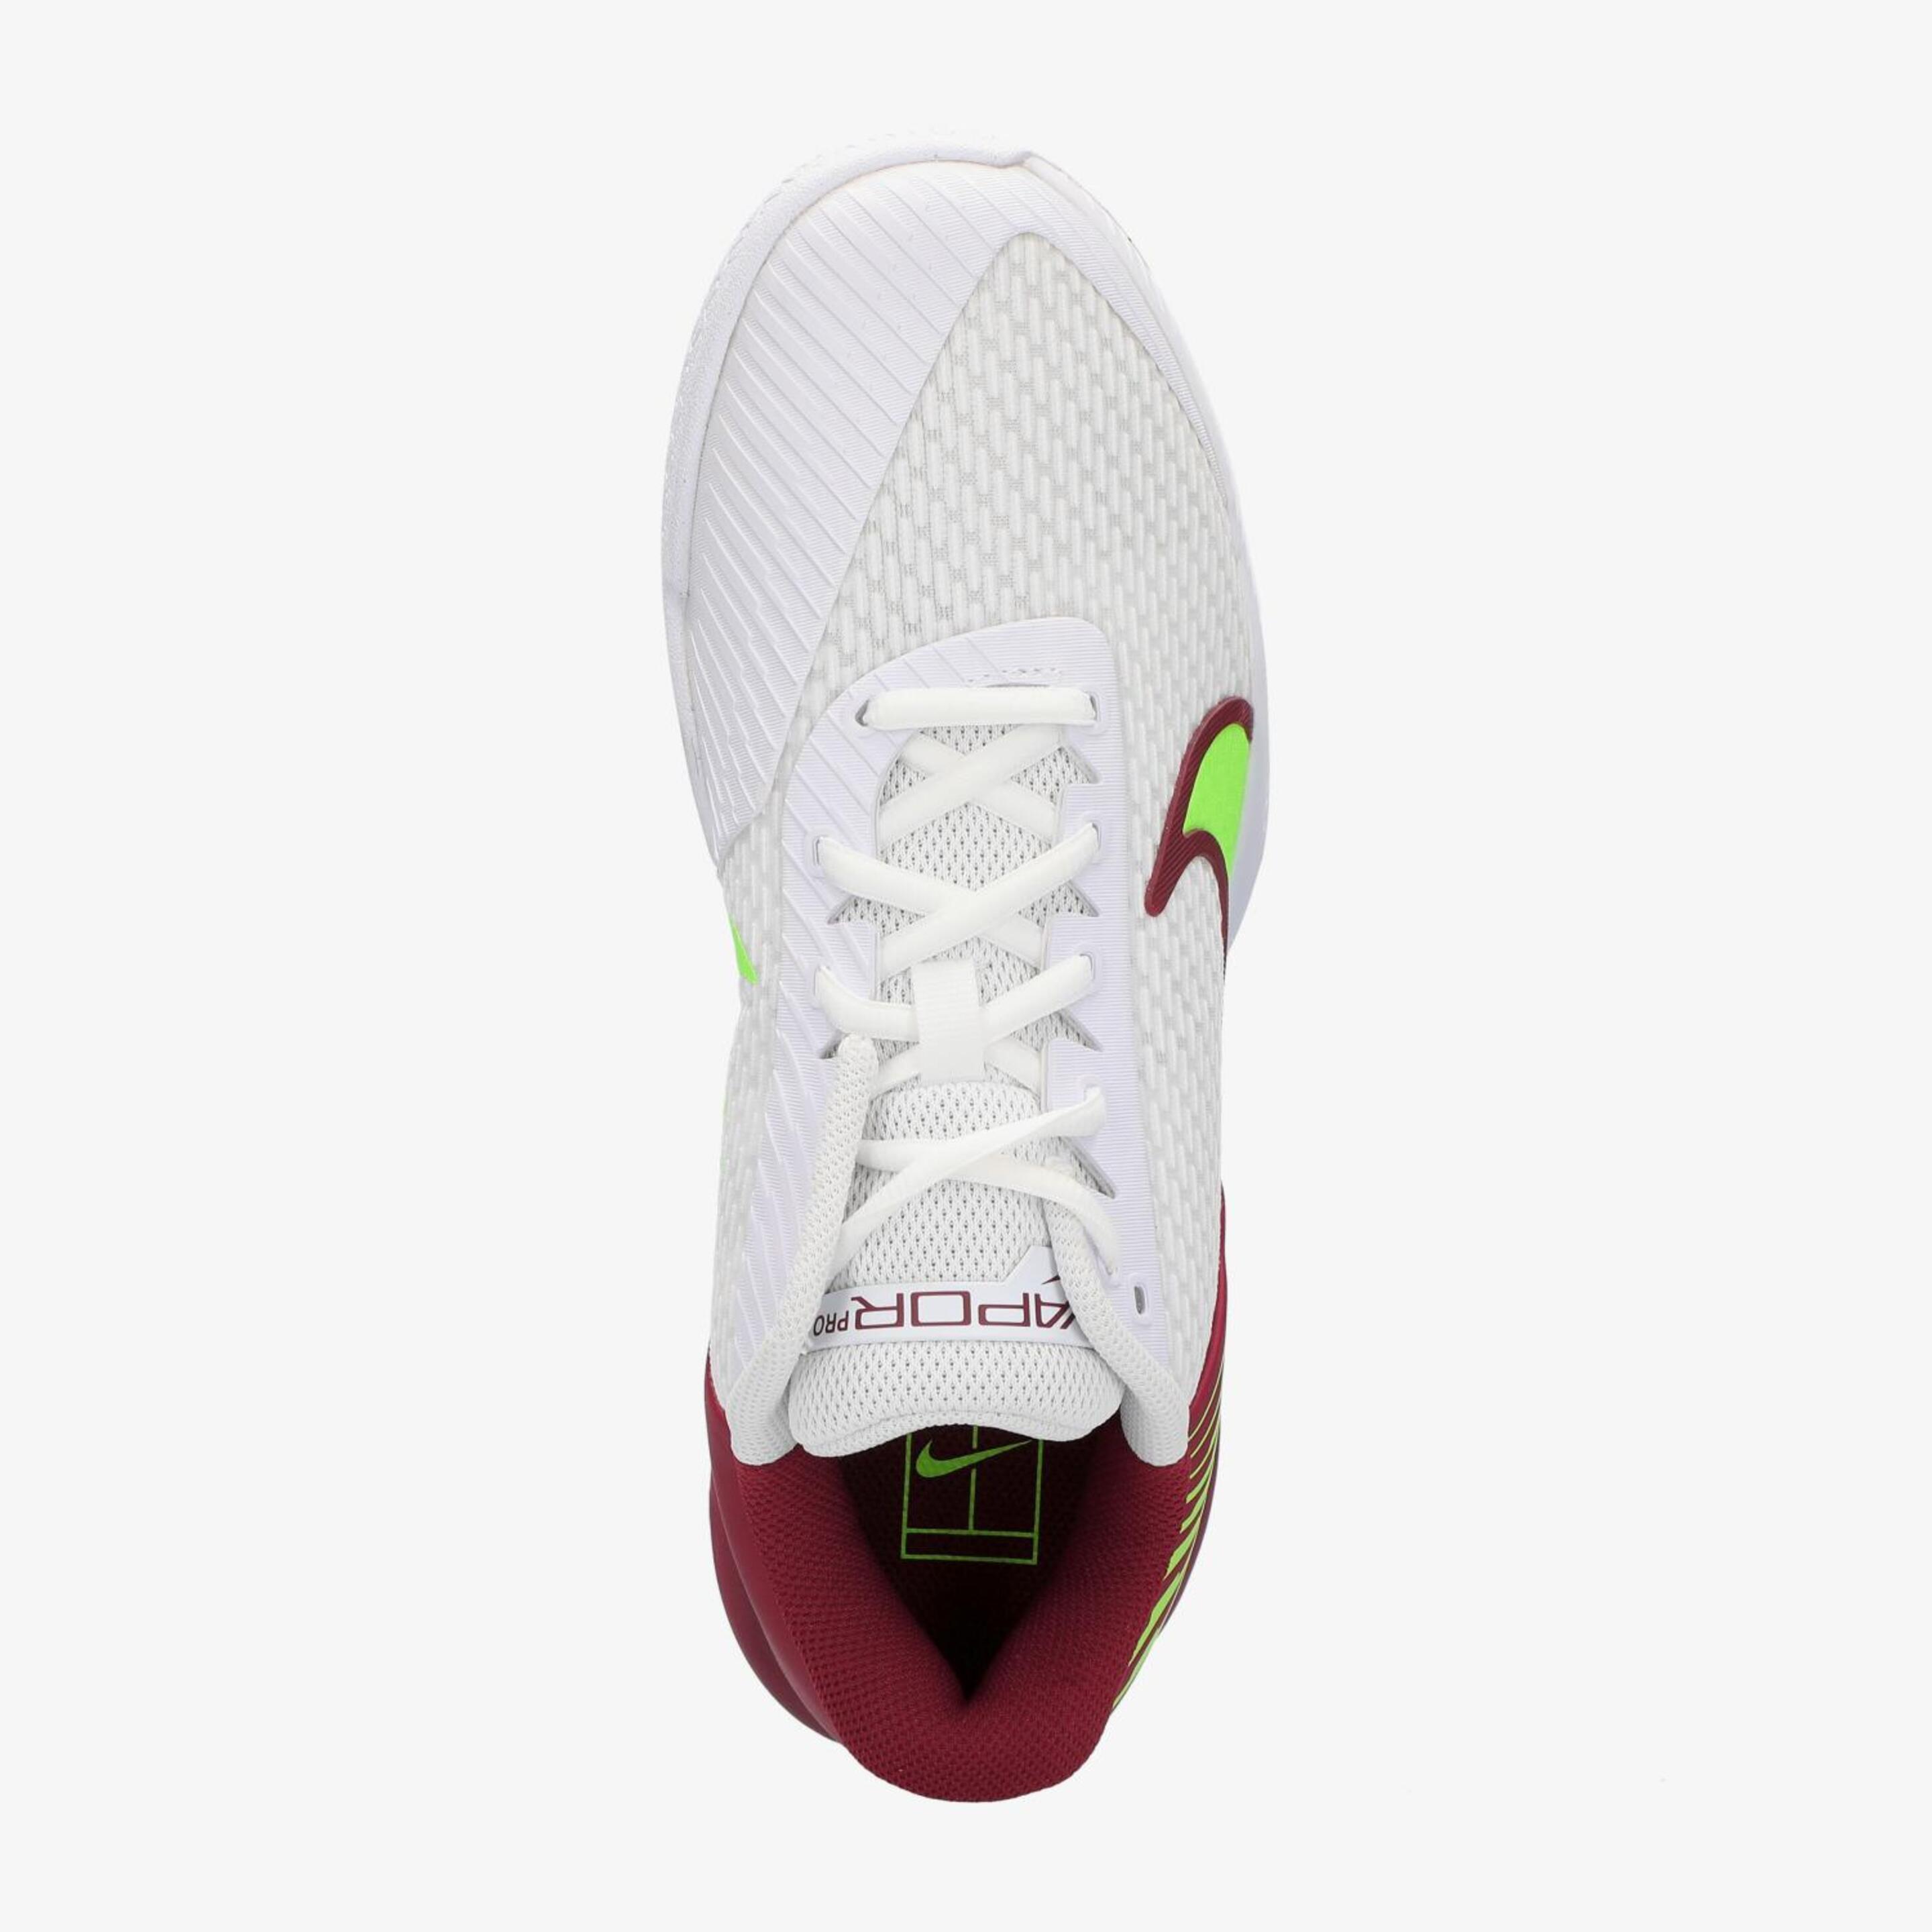 Nike Vapor Pro 2